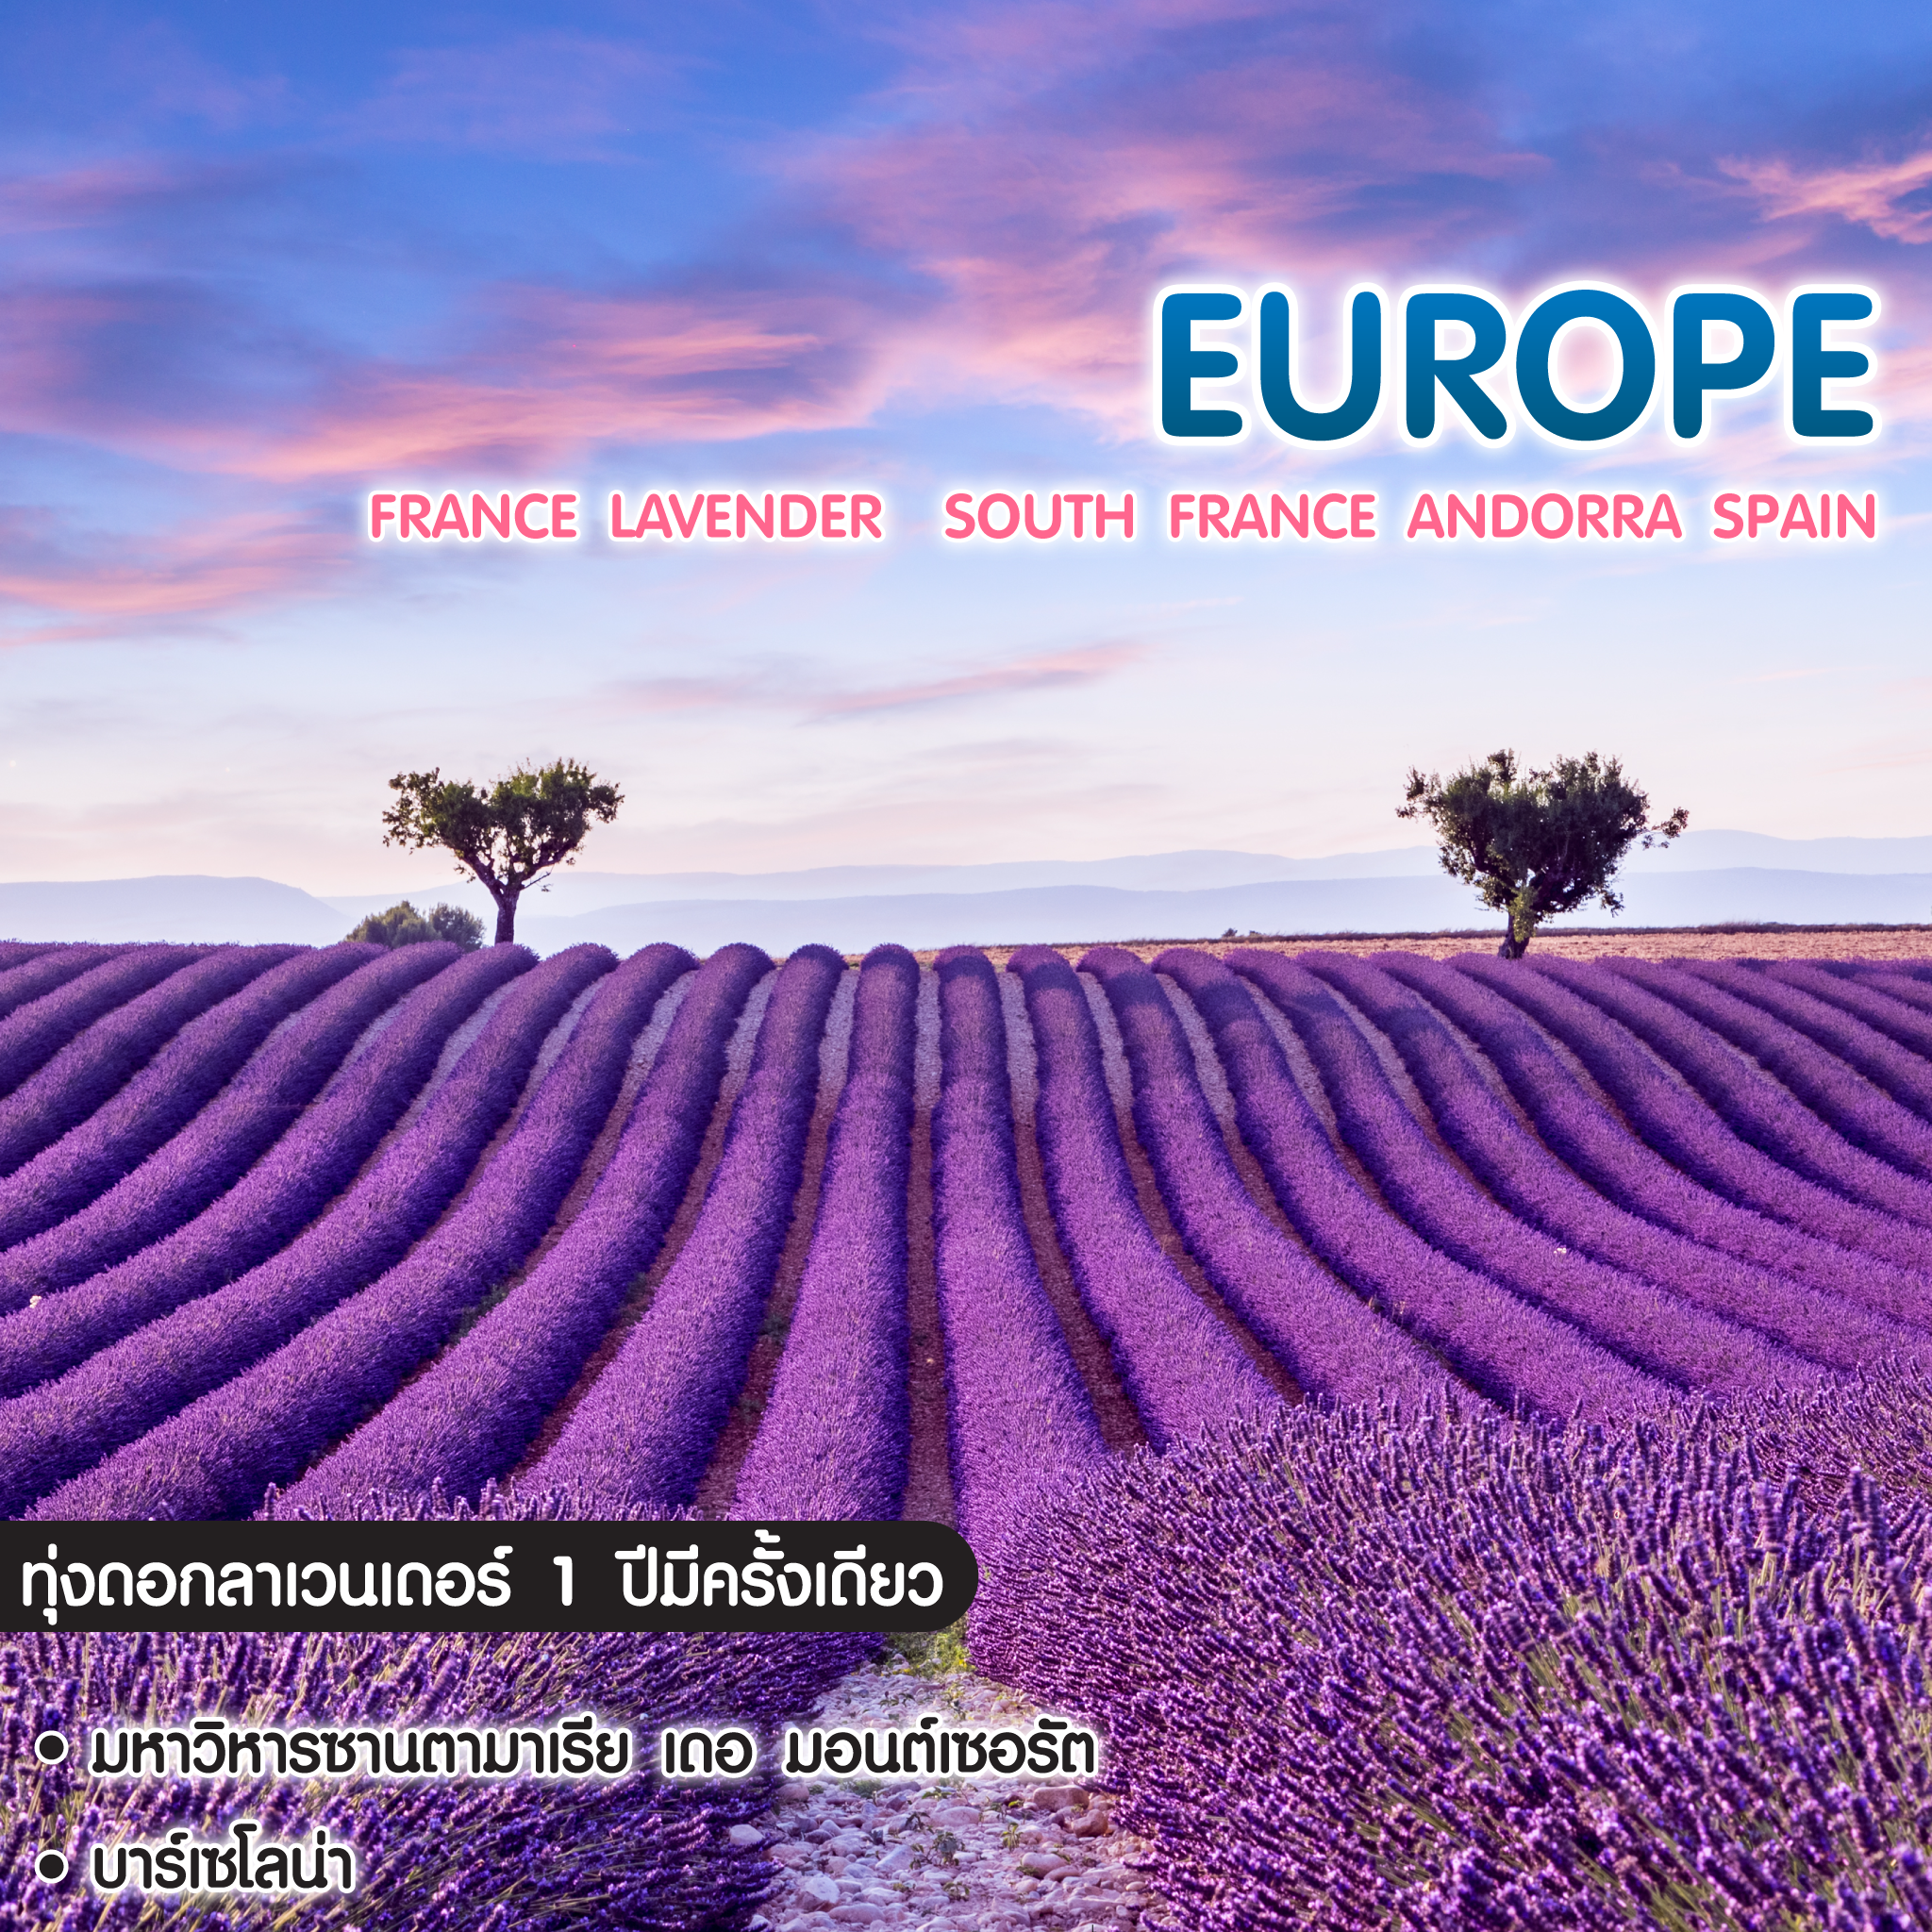 ทัวร์ยุโรป France Lavender South France Andorra Spain 1 ปีมีครั้งเดียว 